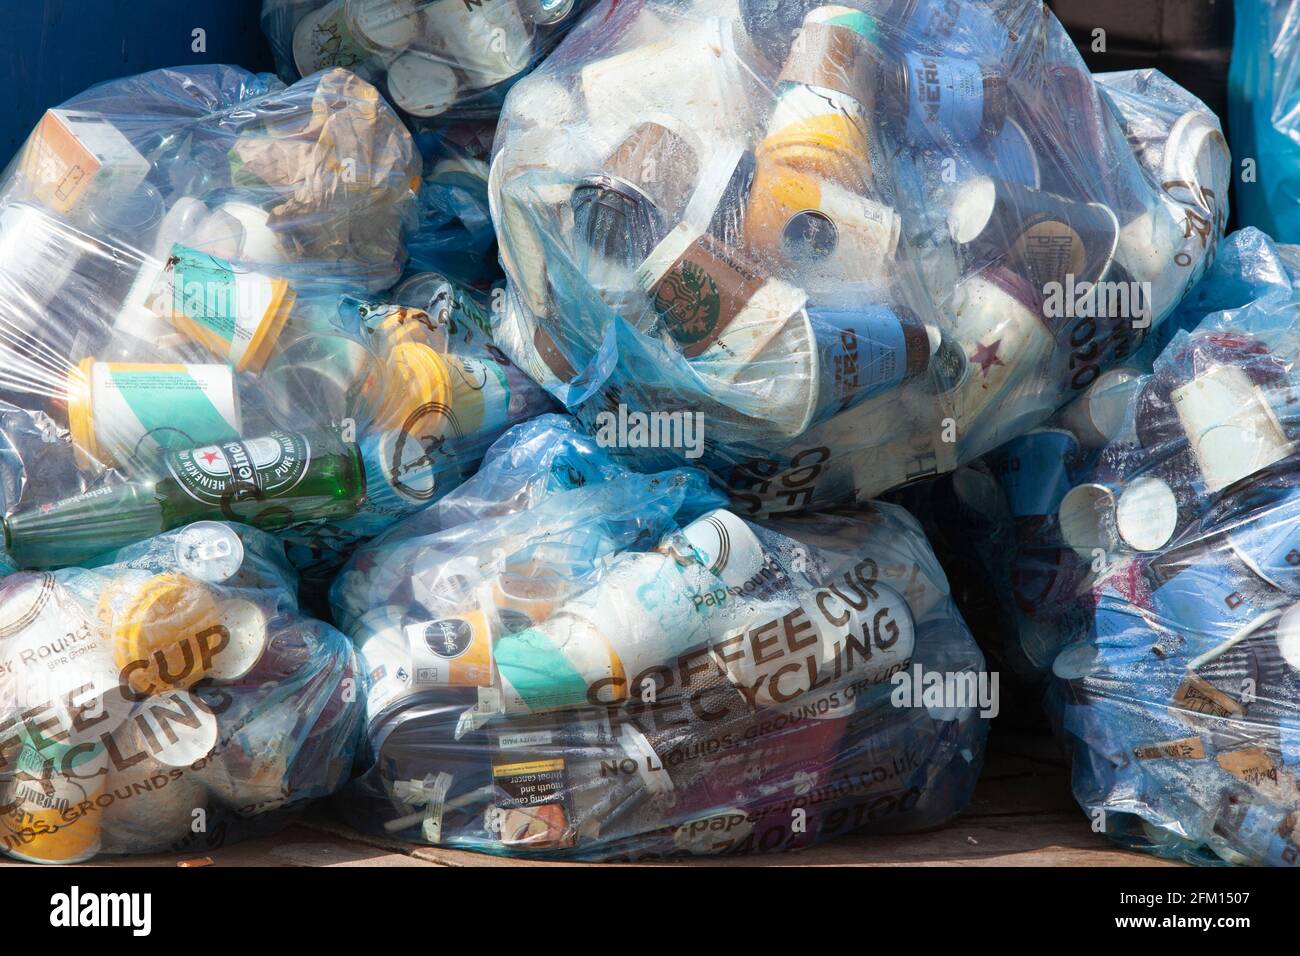 Londra, Regno Unito, 30 aprile 2021: Un cumulo di sacchetti di plastica blu contenenti tazze da caffè monouso attende di essere raccolto per il riciclaggio su Tooley Street, accanto Foto Stock